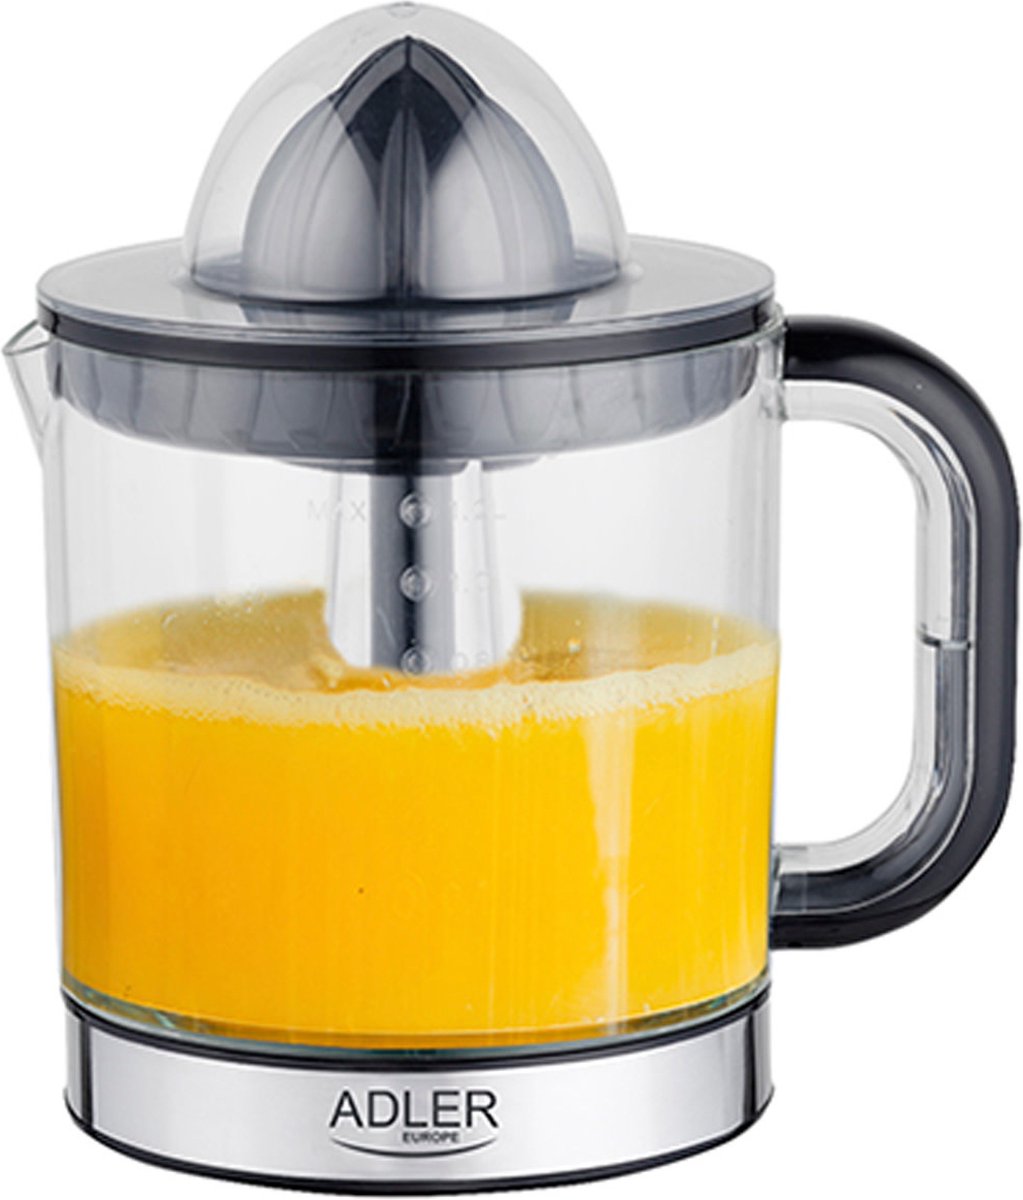 Adler Ad 4012 - Elektrische Citruspers - 1.2 L - Grijs